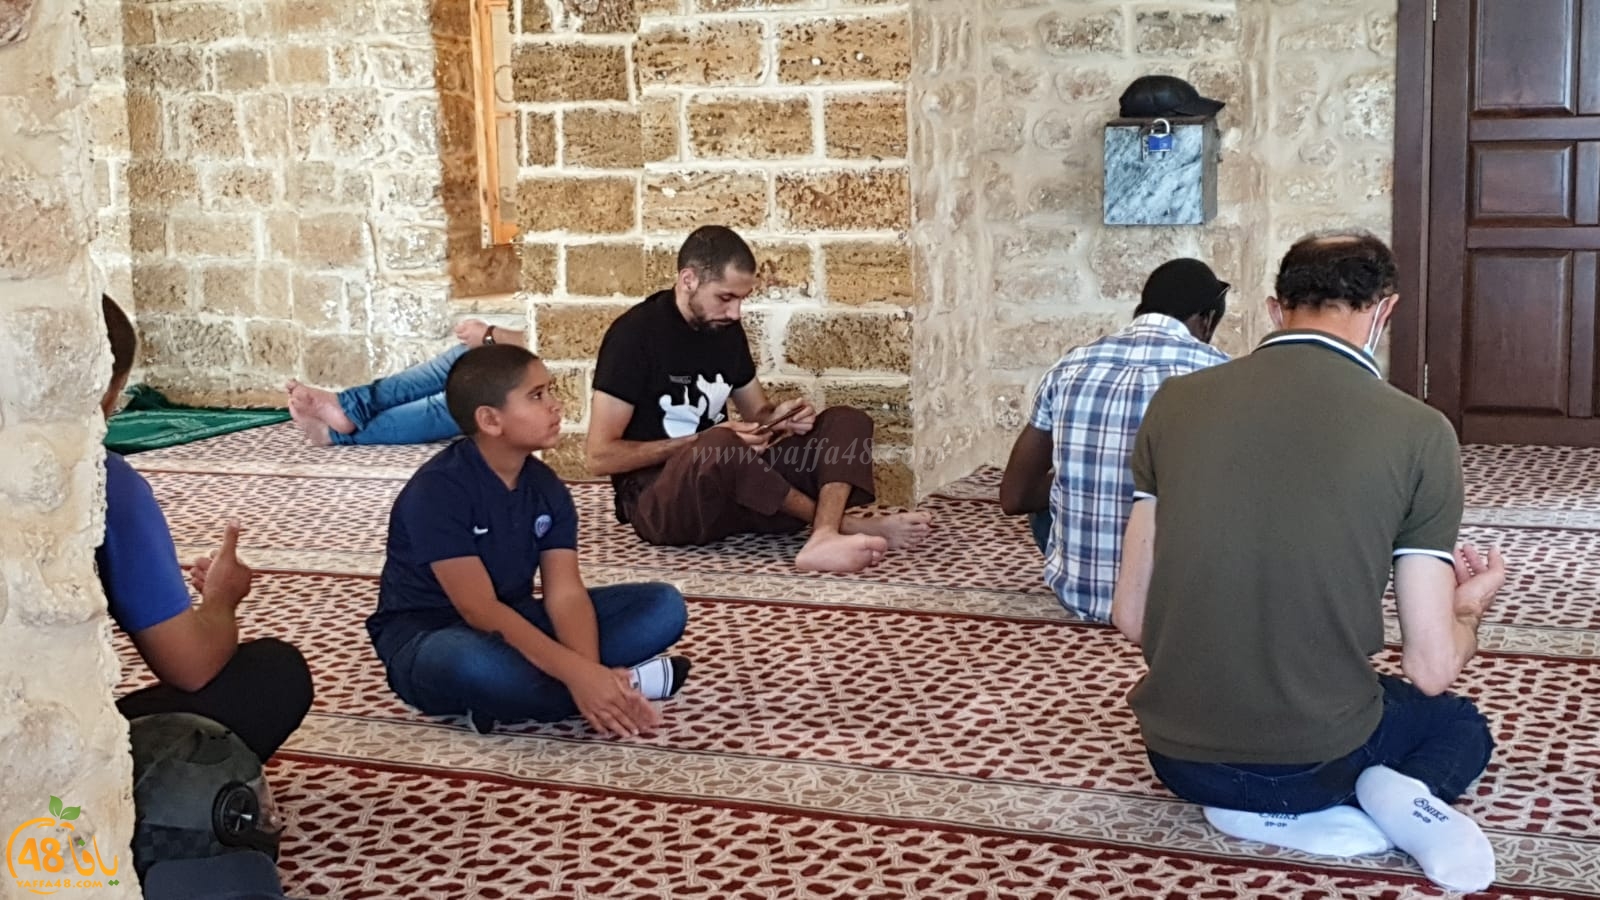  فيديو: خطبة وصلاة الجمعة من مسجد البحر في مدينة يافا 